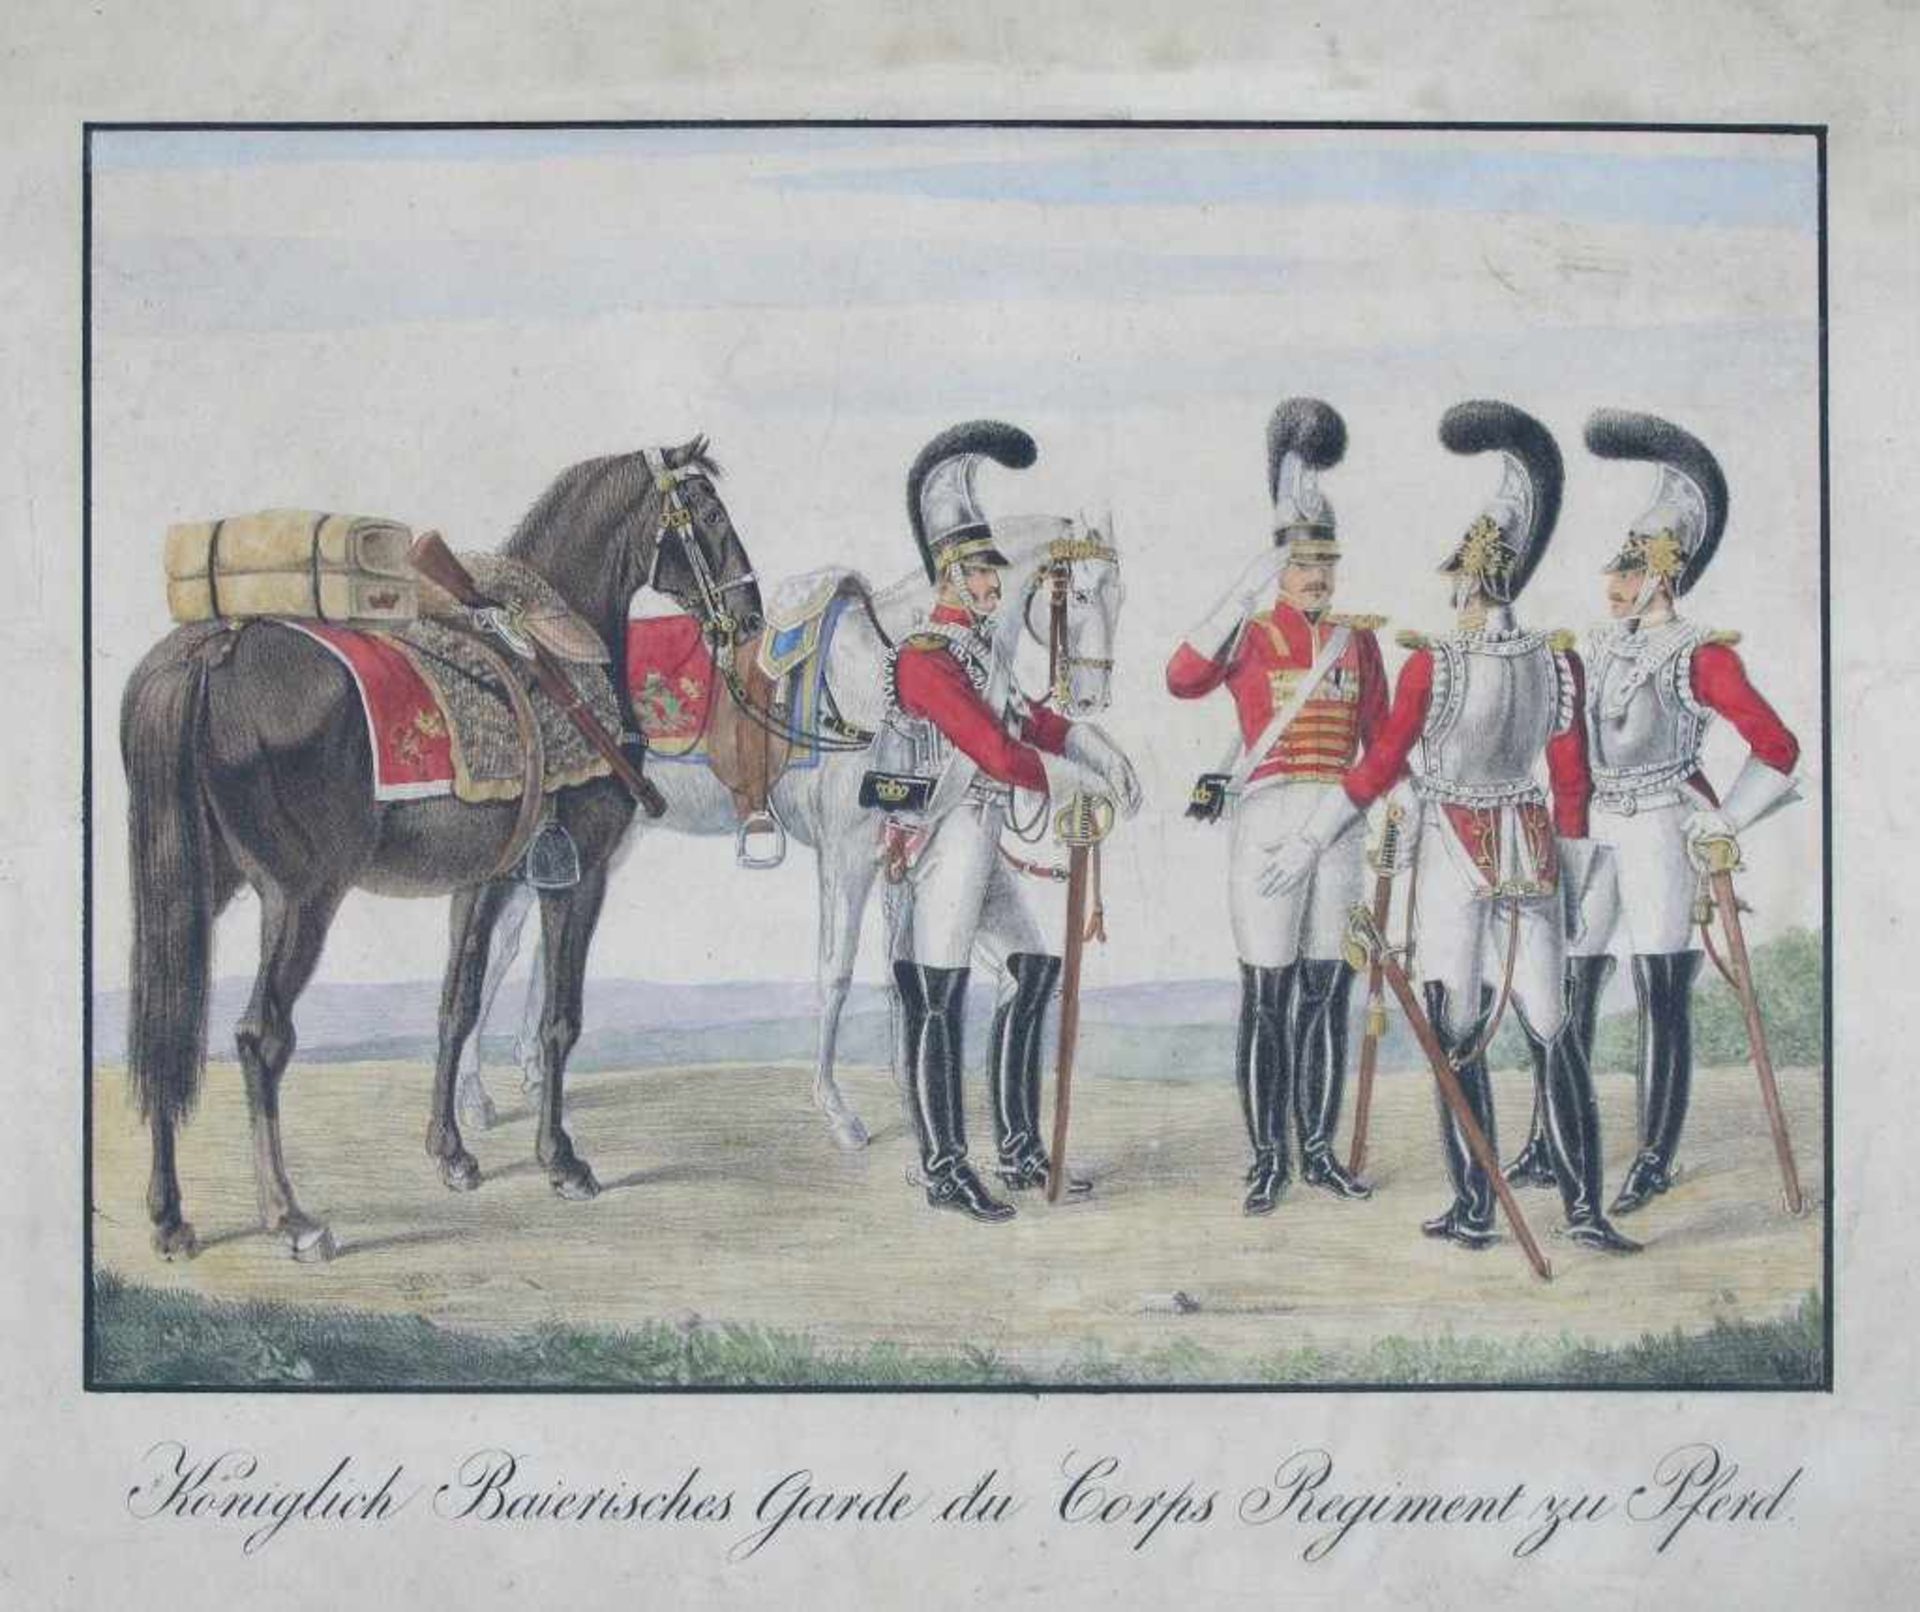 Militär: "Königlich Baierisches Garde du Corps Regiment zu Pferd". Kol. Lithographie, 19. Jh.